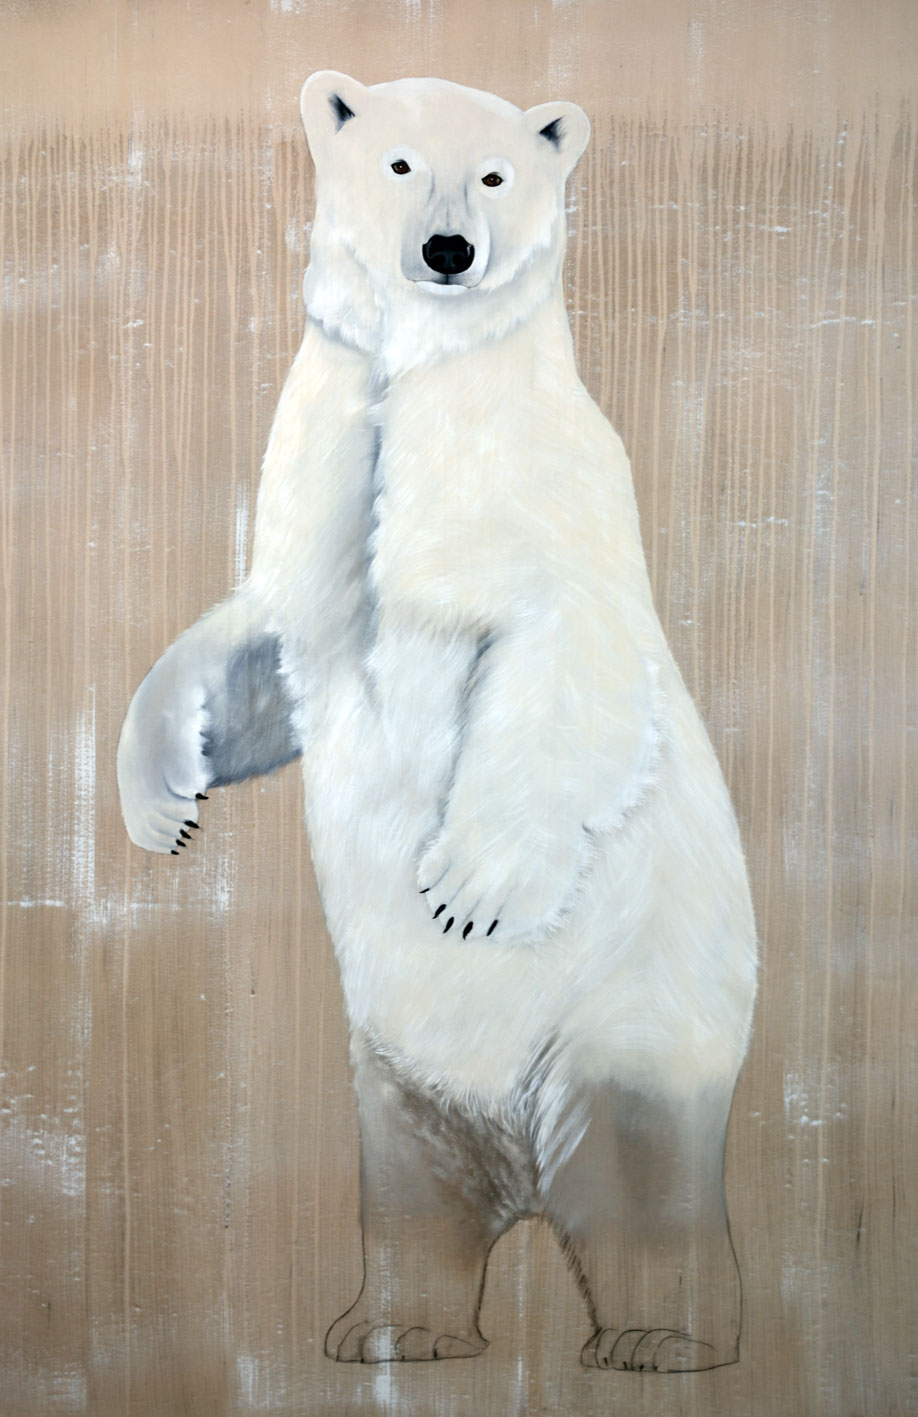 URSUS MARITIMUS ursus-maritimus-polar-bear-white-threatened-endangered-extinction Thierry Bisch Contemporary painter animals painting art decoration nature biodiversity conservation